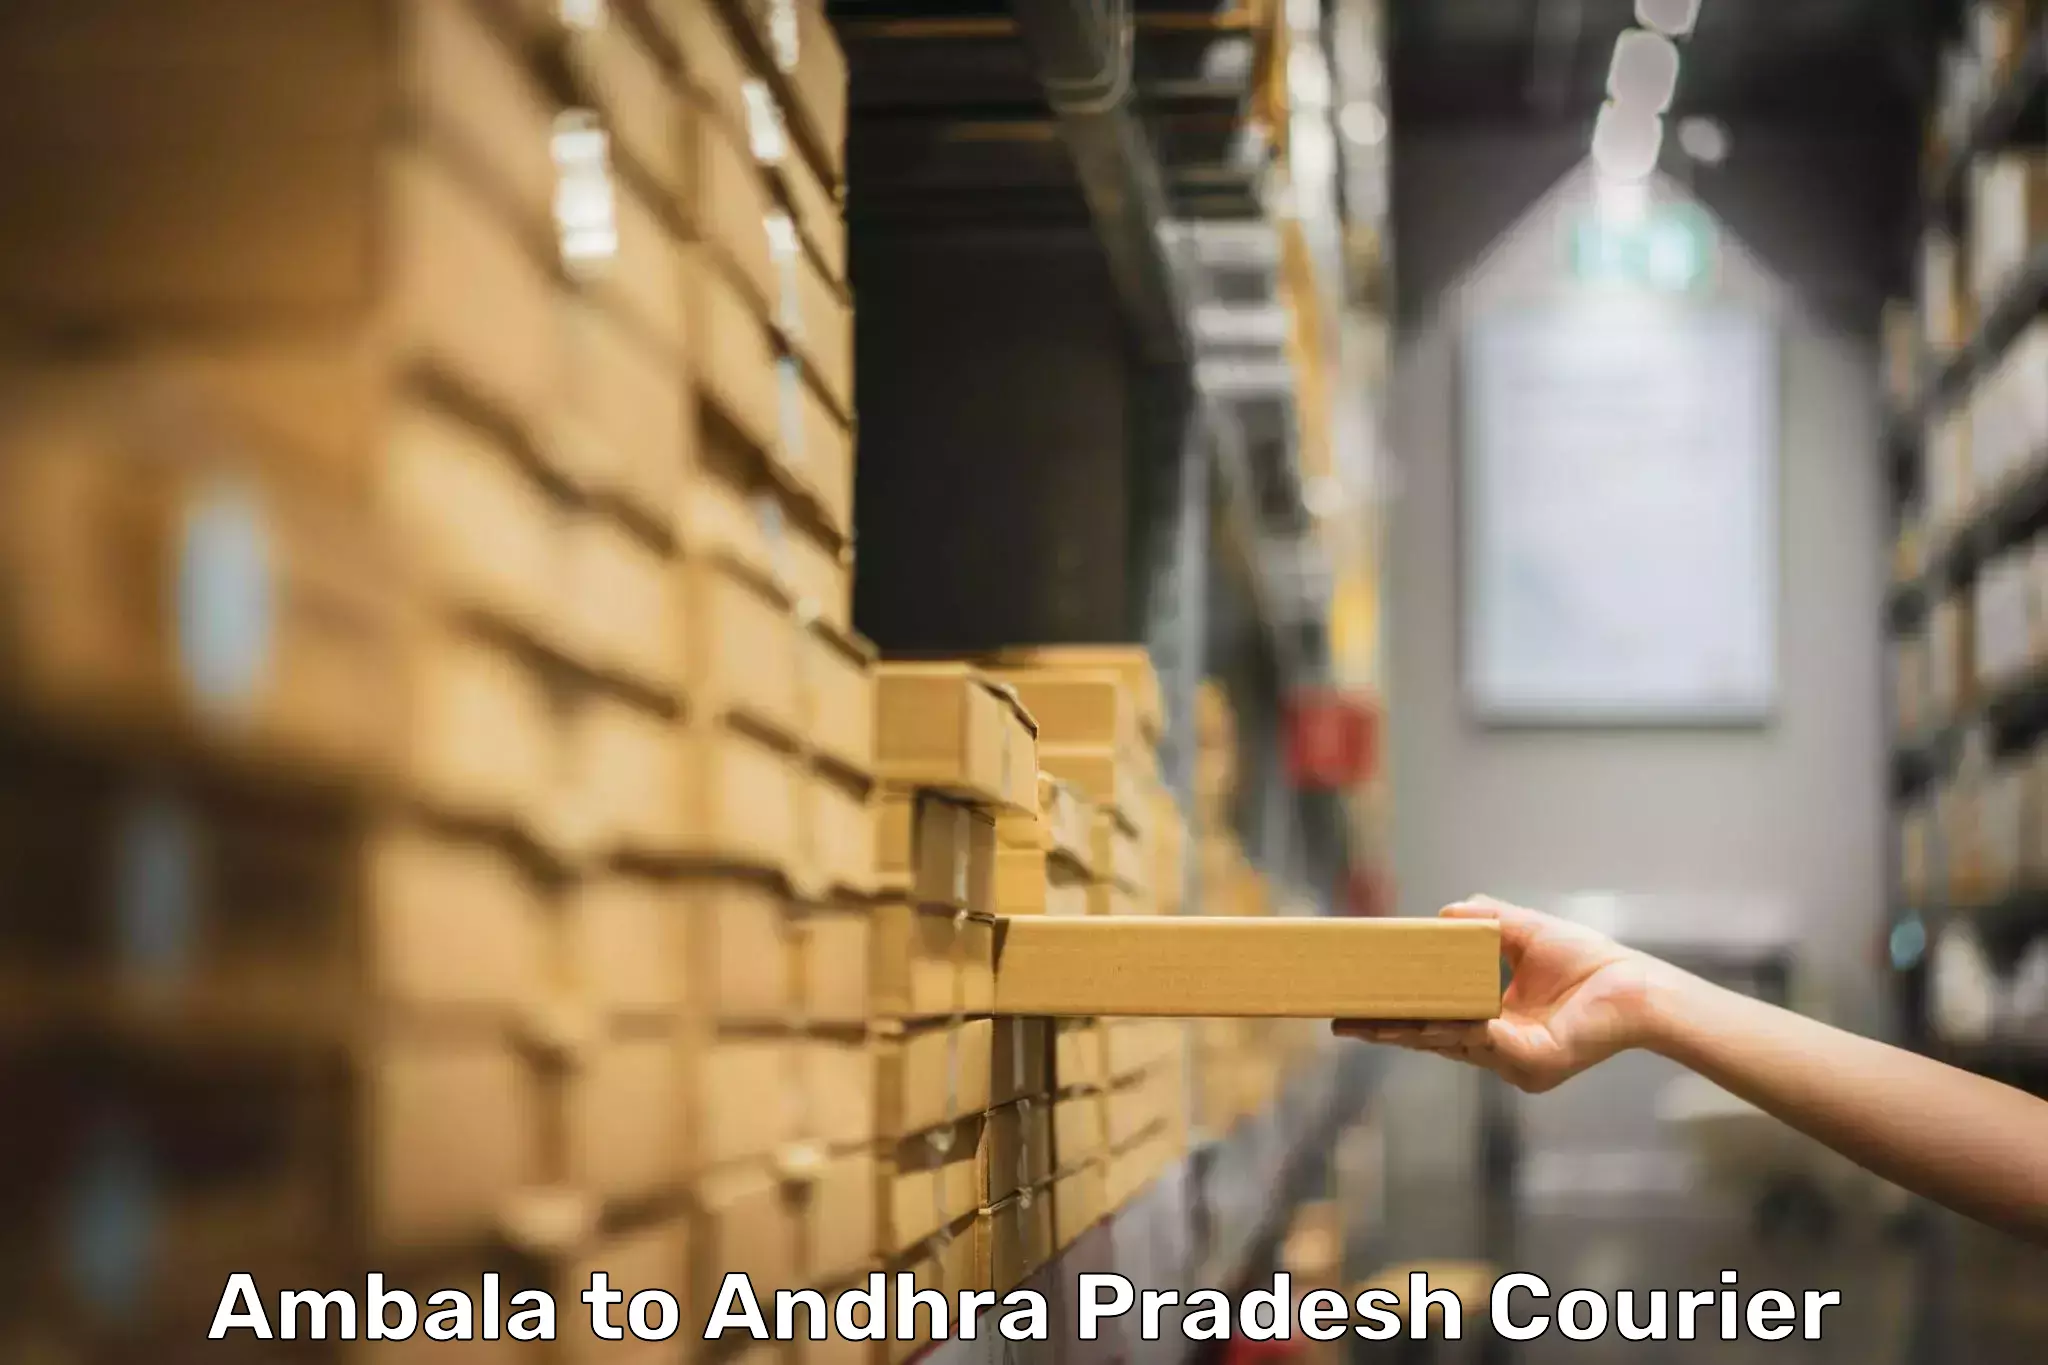 Global baggage shipping Ambala to Allagadda